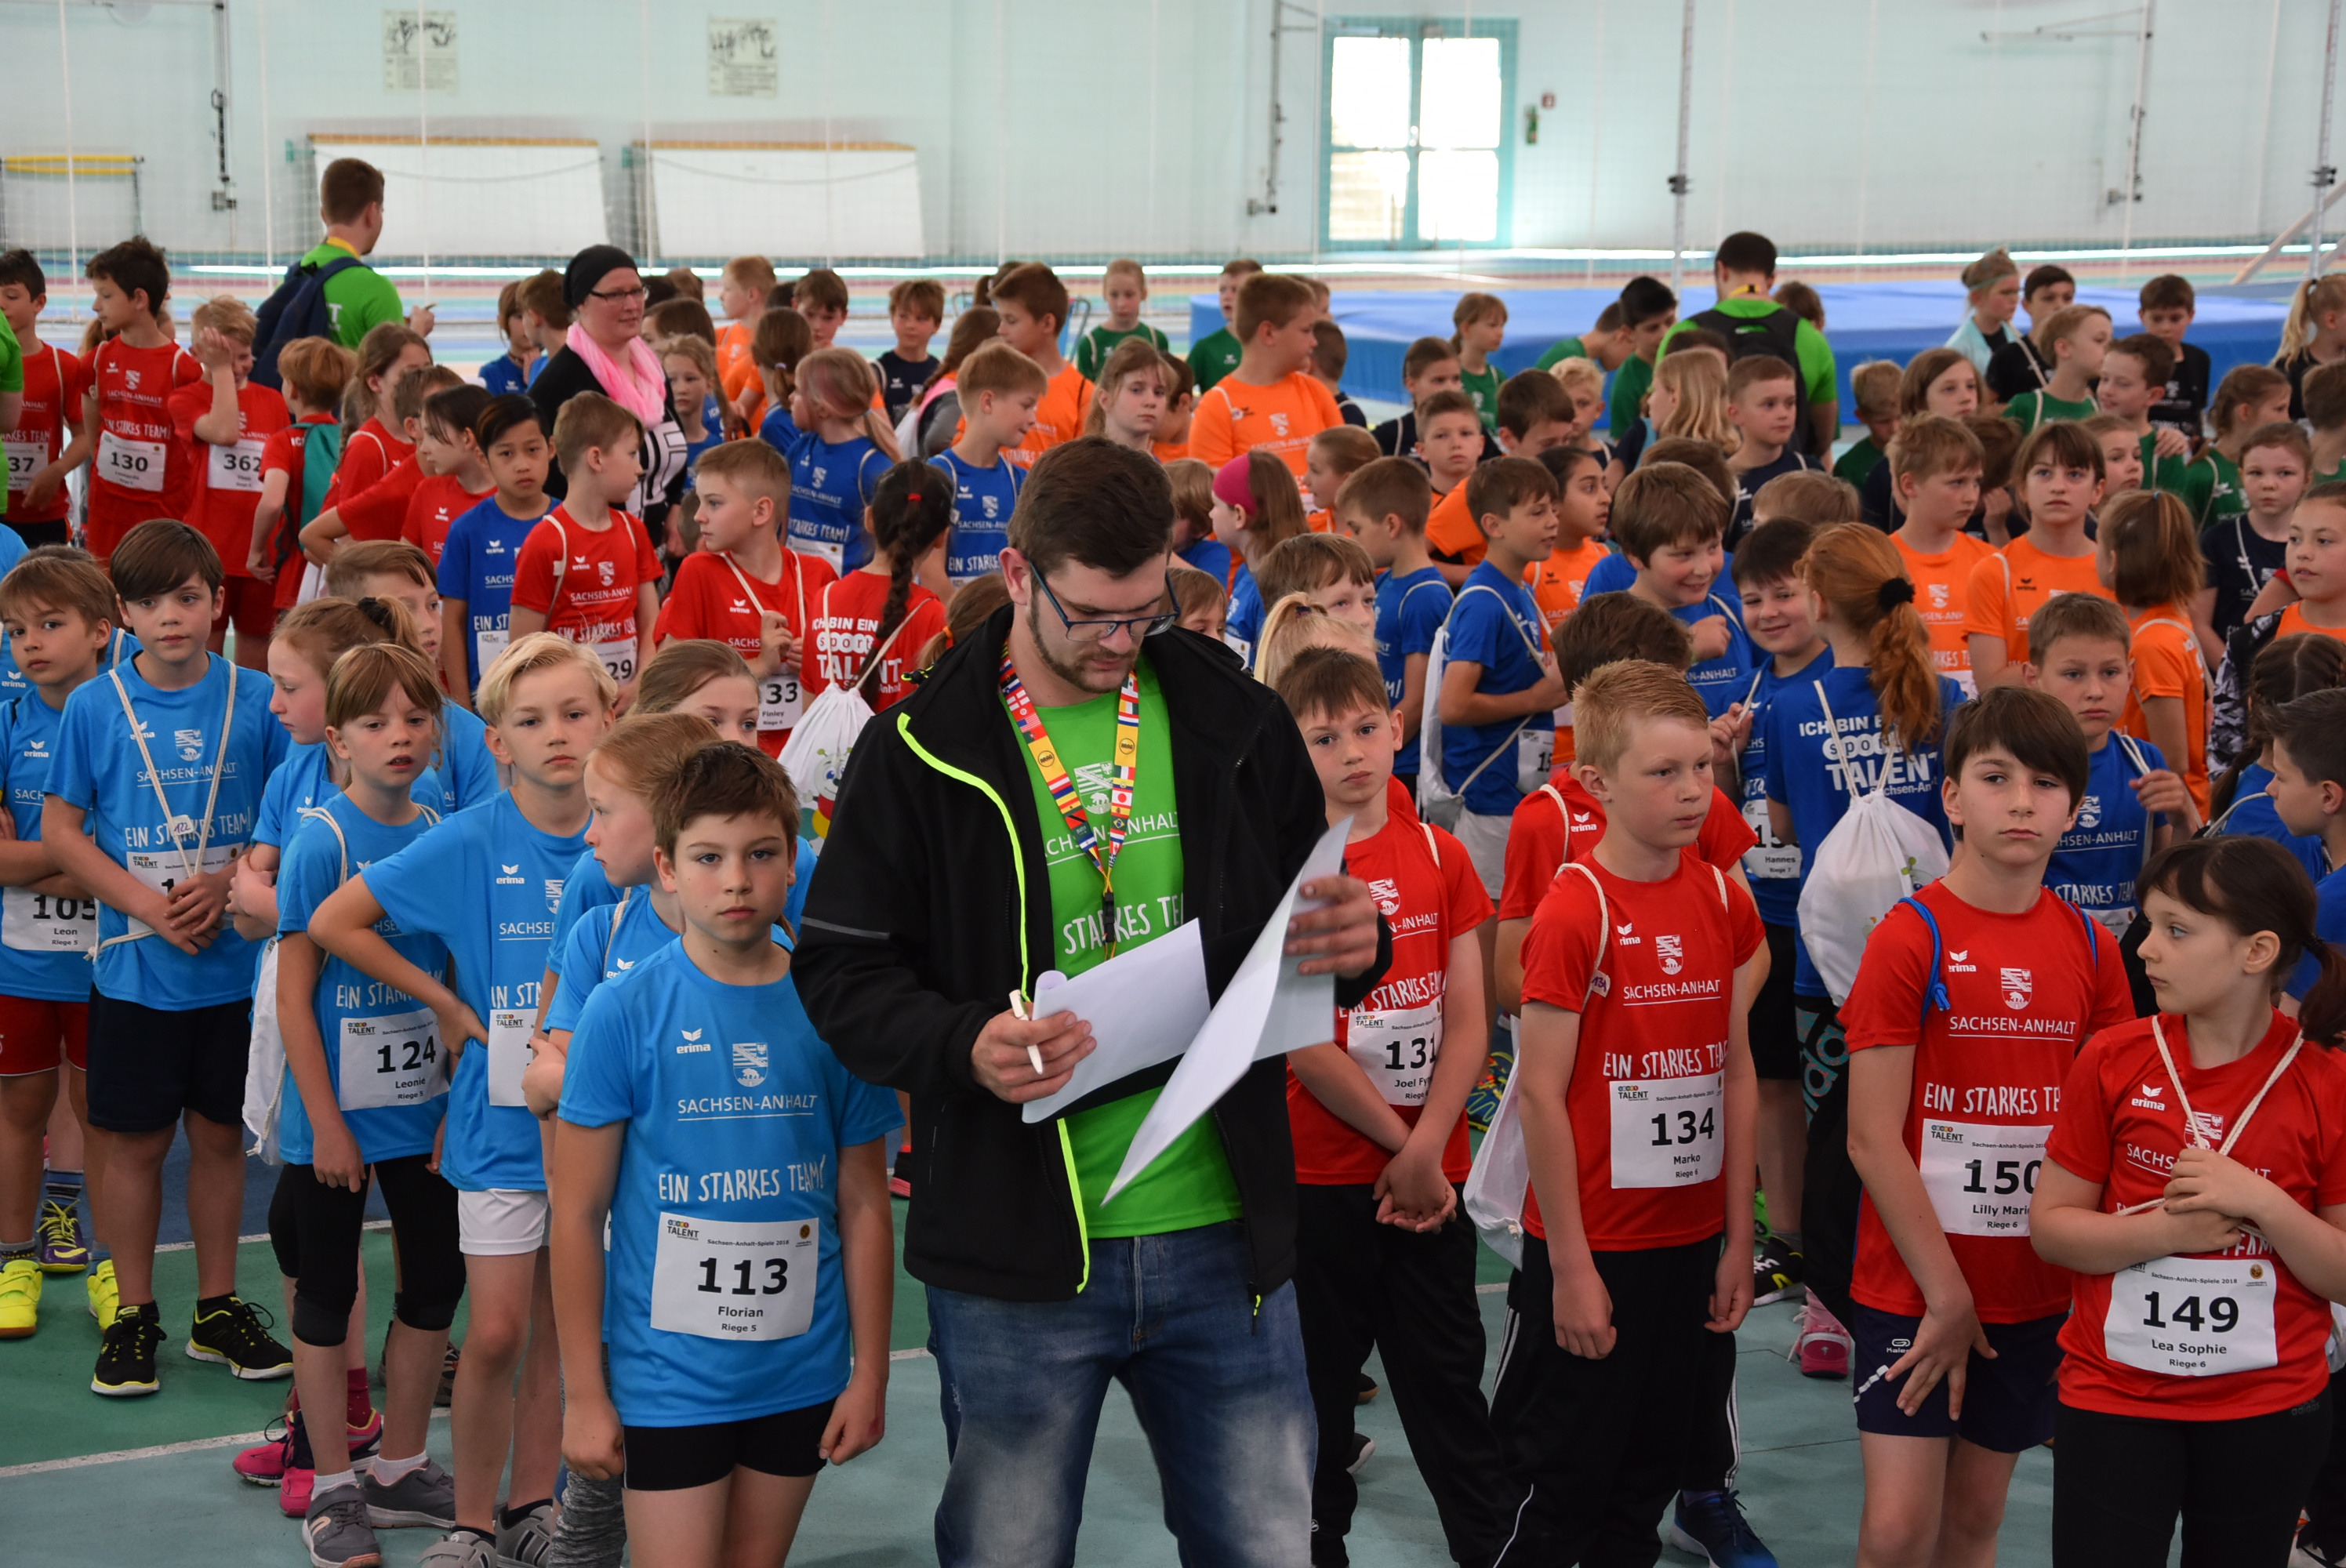 Wie bei den Sachsen-Anhalt-Spielen 2018 erhalten die Mädchen und Jungen auch in diesem Jahr schicke farbige Teilnehmershirts der Landeskampagne "Ein starkes Team".